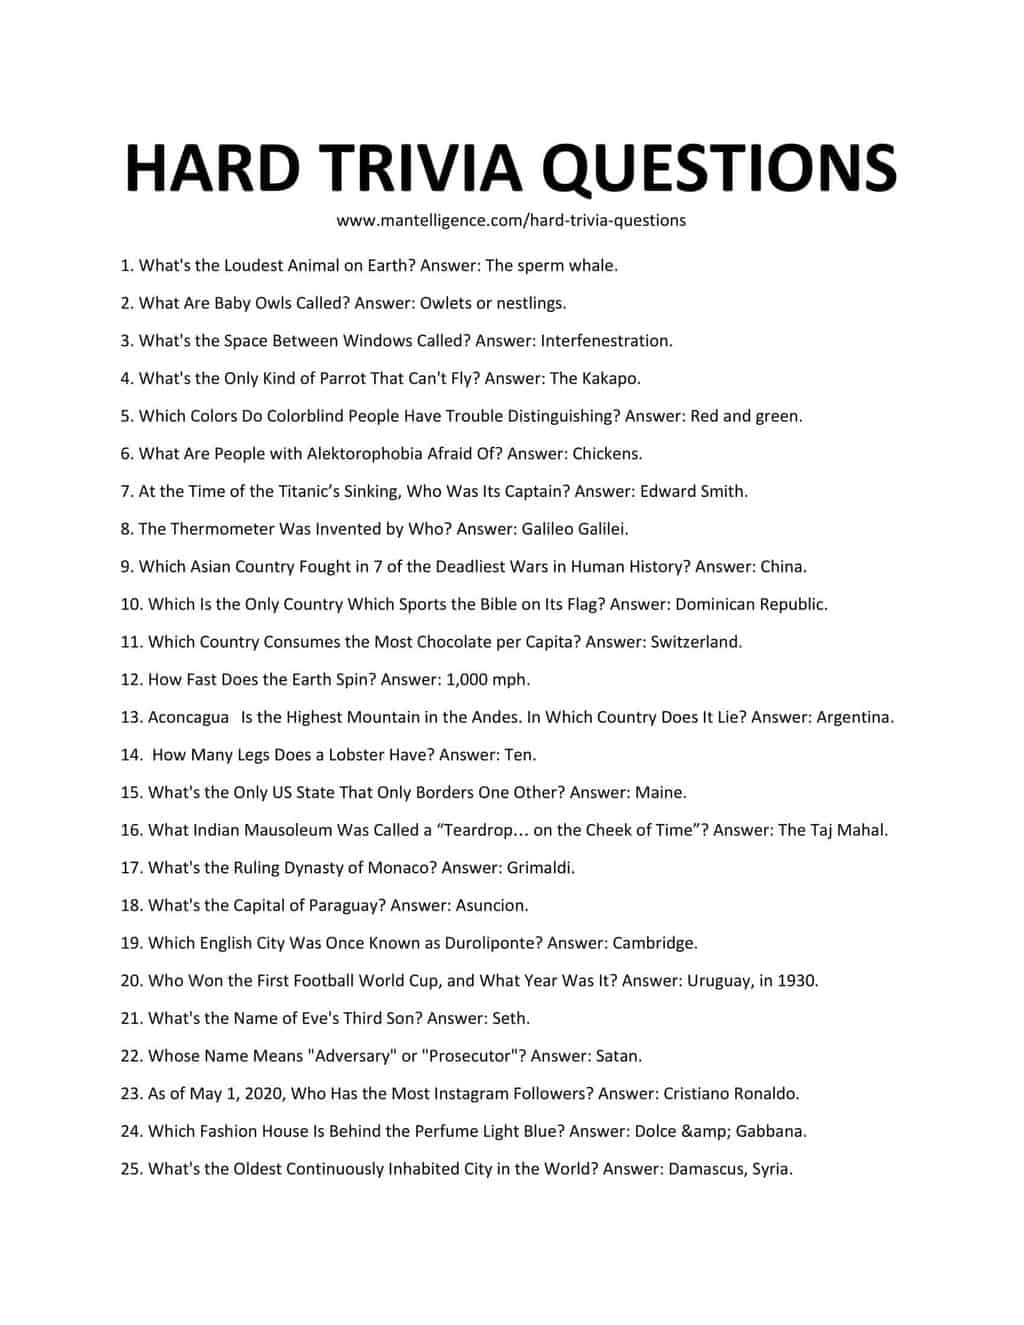 Hard Trivia Questions